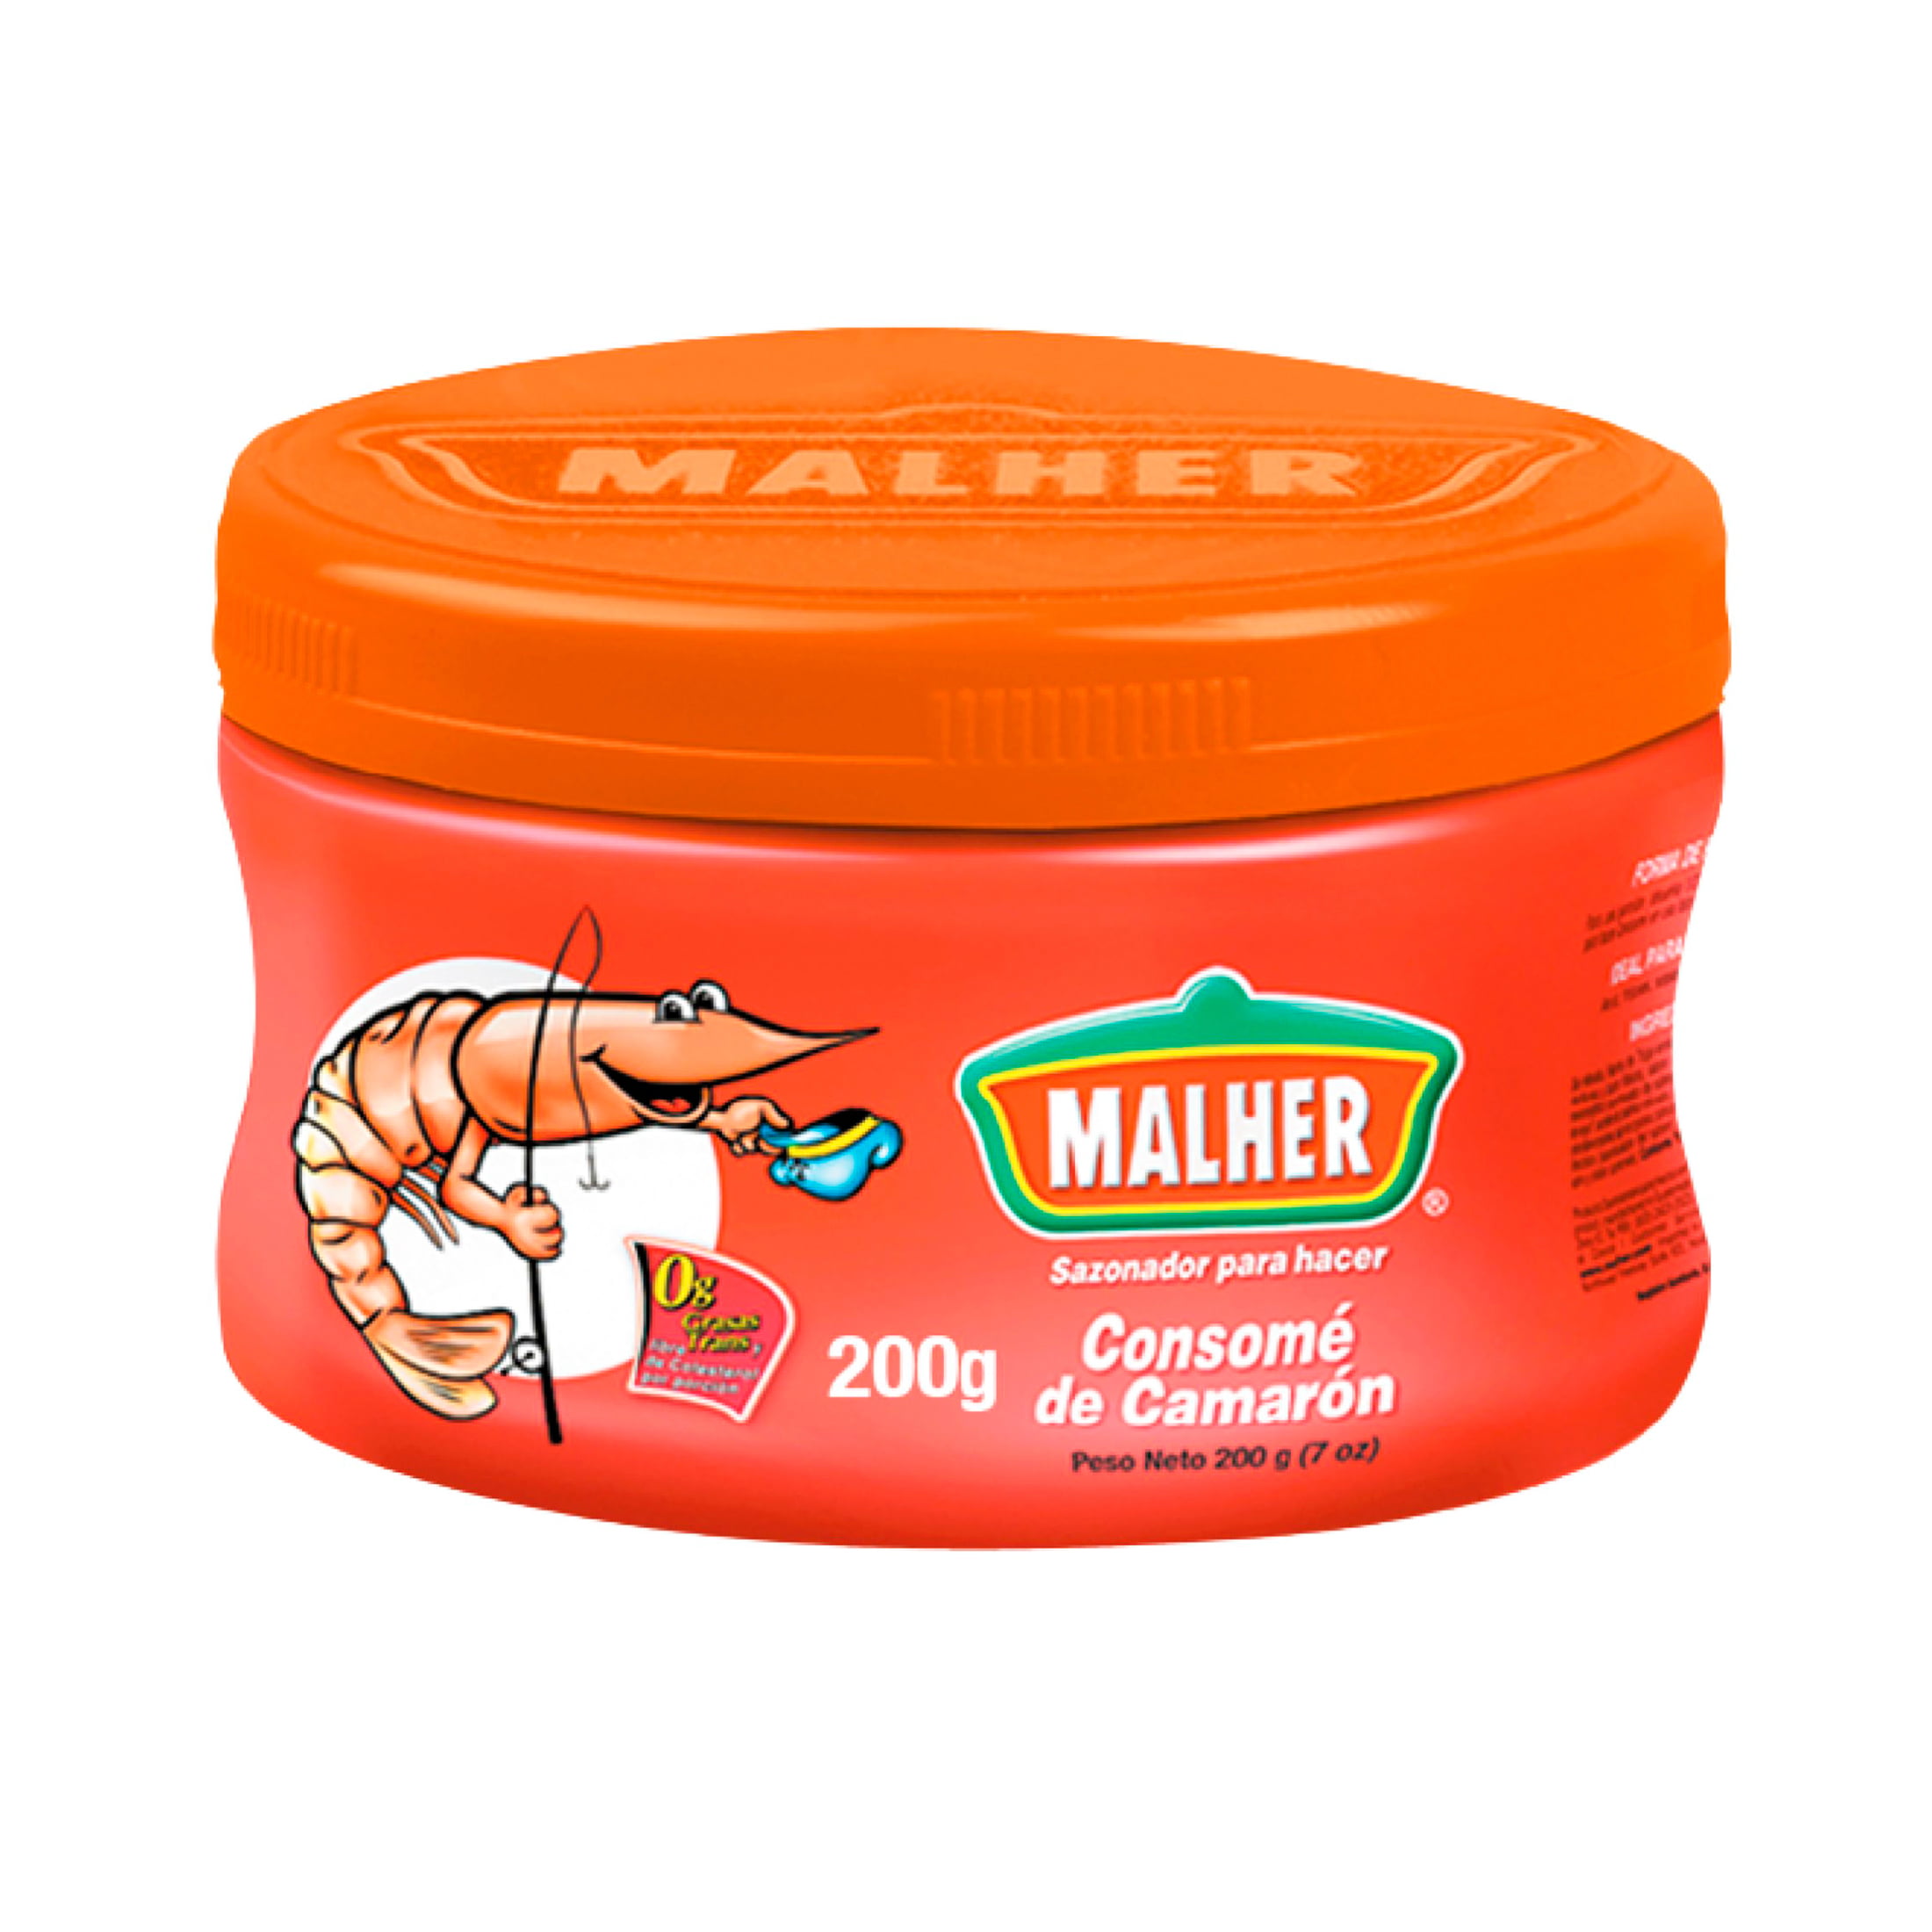 Malher Shrimp Bouillon, 7 Oz -  Online Grocery